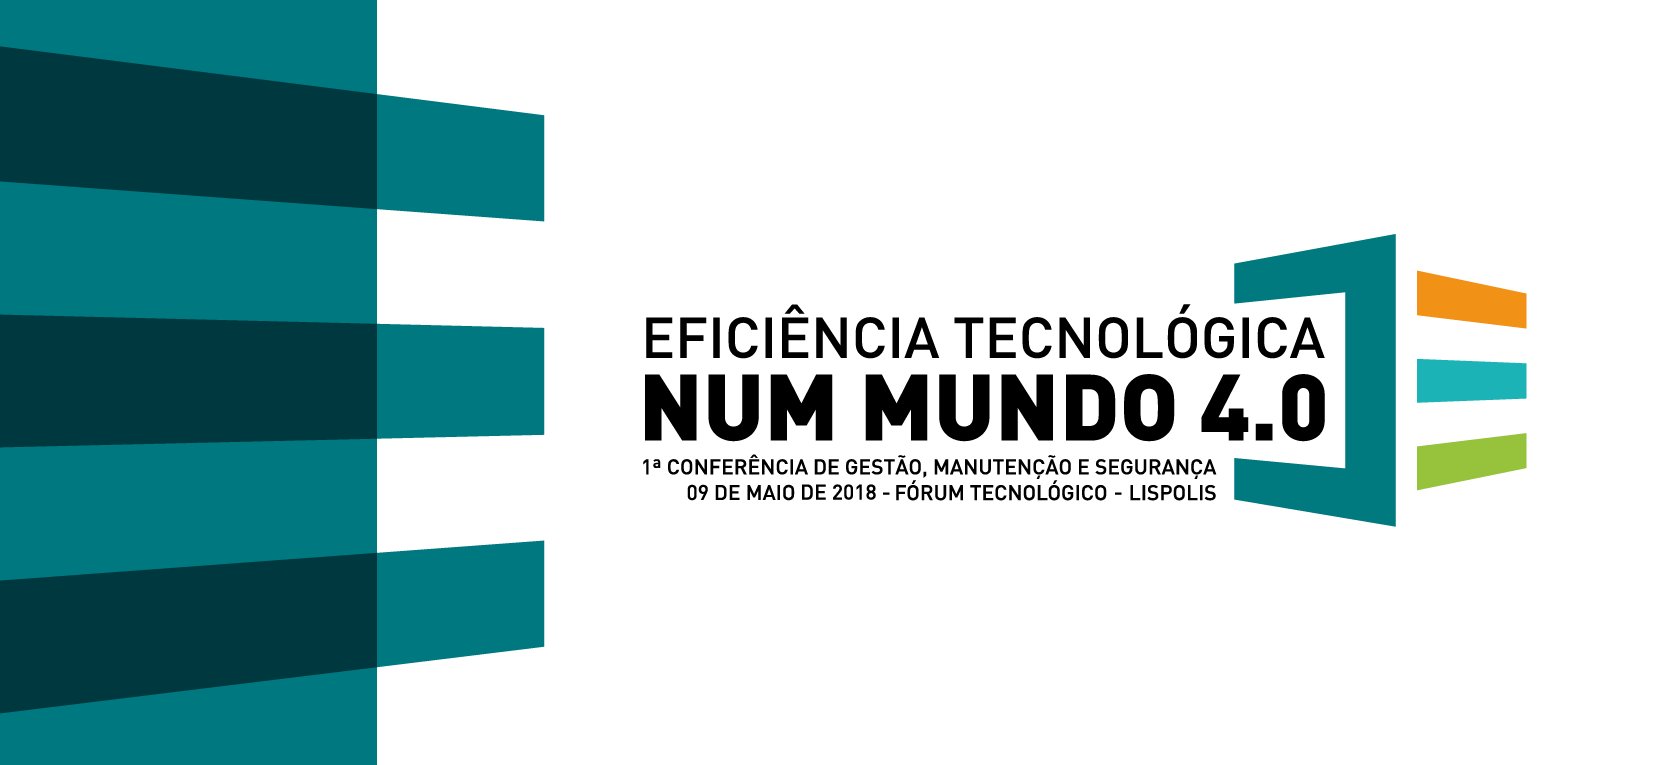 Conferência de Eficiência Tecnológica 4.0 realiza-se a 9 de maio